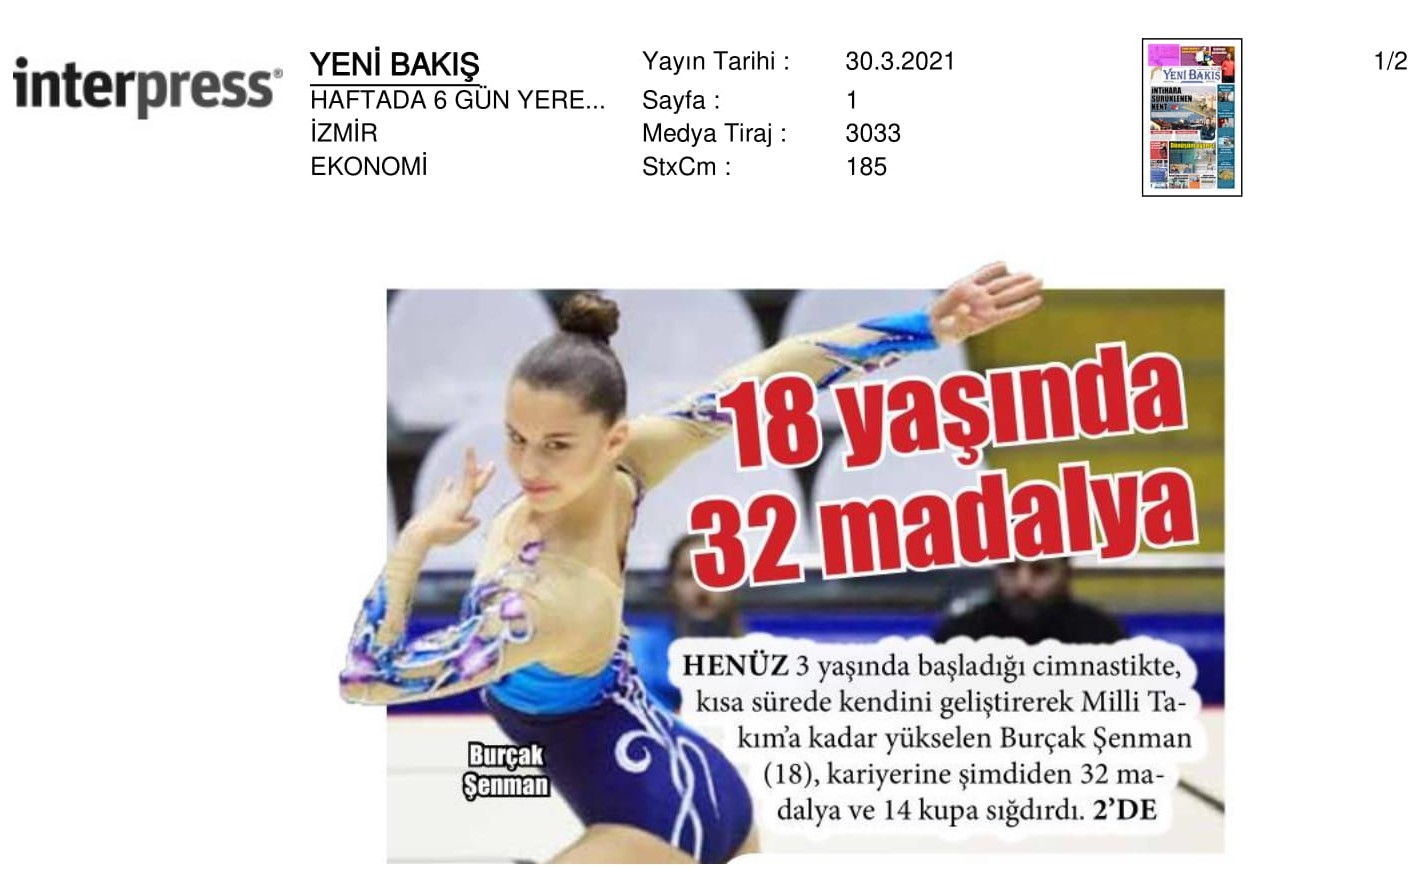 Annesi ‘enerji atsın’ diye başlattı, Türkiye şampiyonu oldu